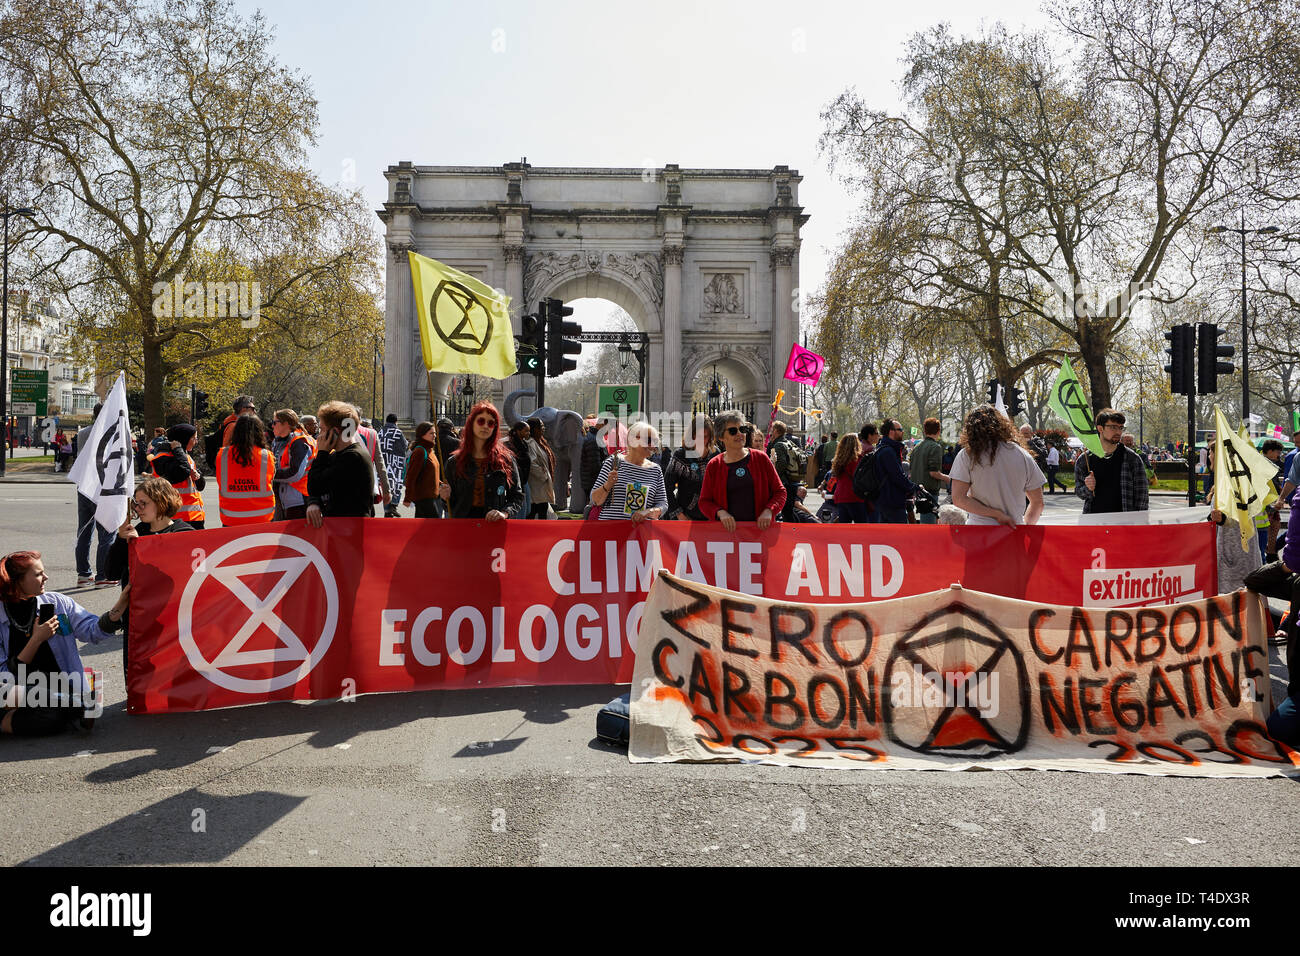 Londres, Royaume-Uni. - 15 Avril 2019 : Les membres de la rébellion Extinction bloquer les routes menant à Marble Arch à promouvoir la sensibilisation aux changements climatiques. Banque D'Images